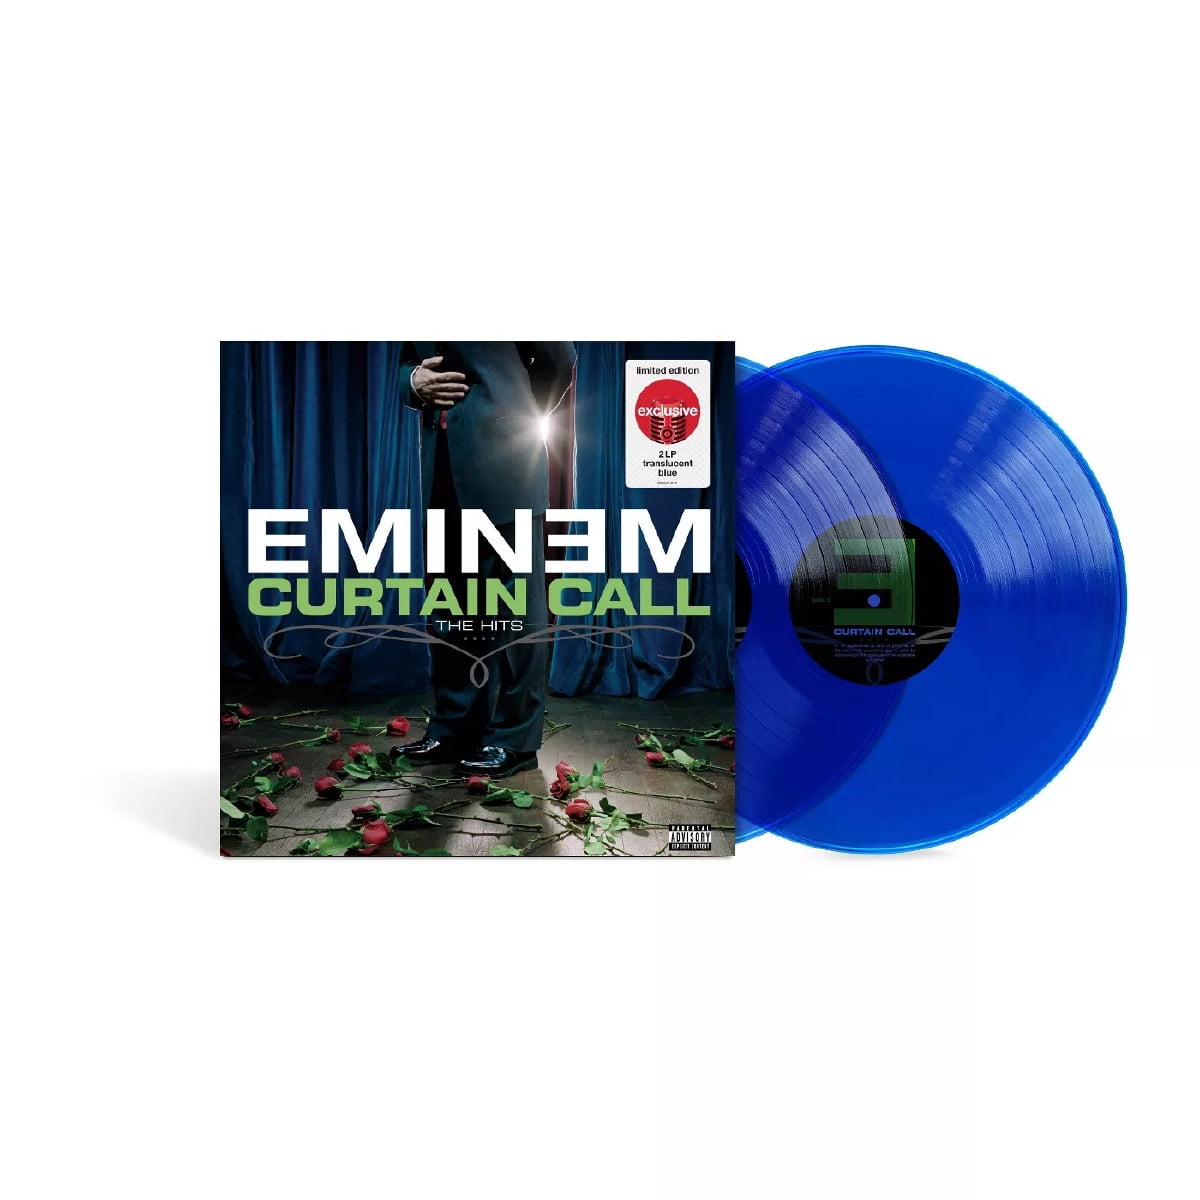 Eminem curtain. Eminem Curtain Call 2 Vinyl. Eminem. Curtain Call. The Hits. 2005. Eminem Vinyl. Eminem пластинка винил Curtain Call.